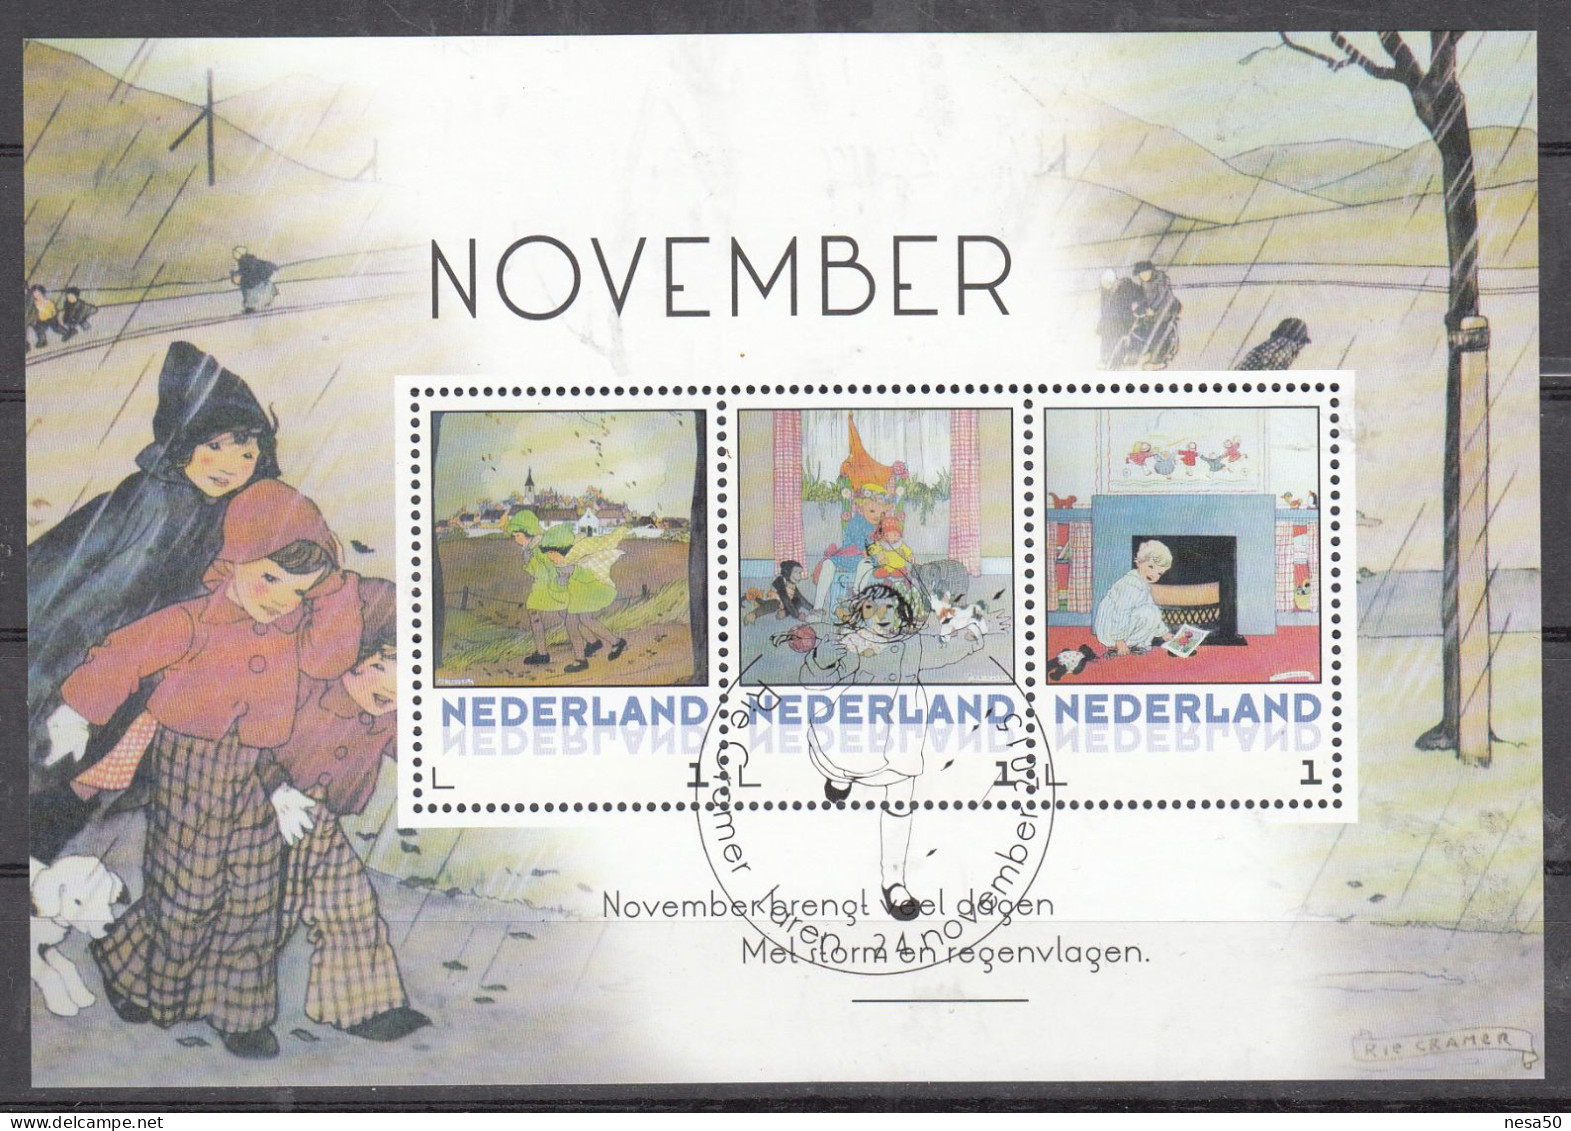 Nederland Persoonlijke Zegel, Rie Cramer,november, Spelende Kinderen, Speciale Stempel - Used Stamps